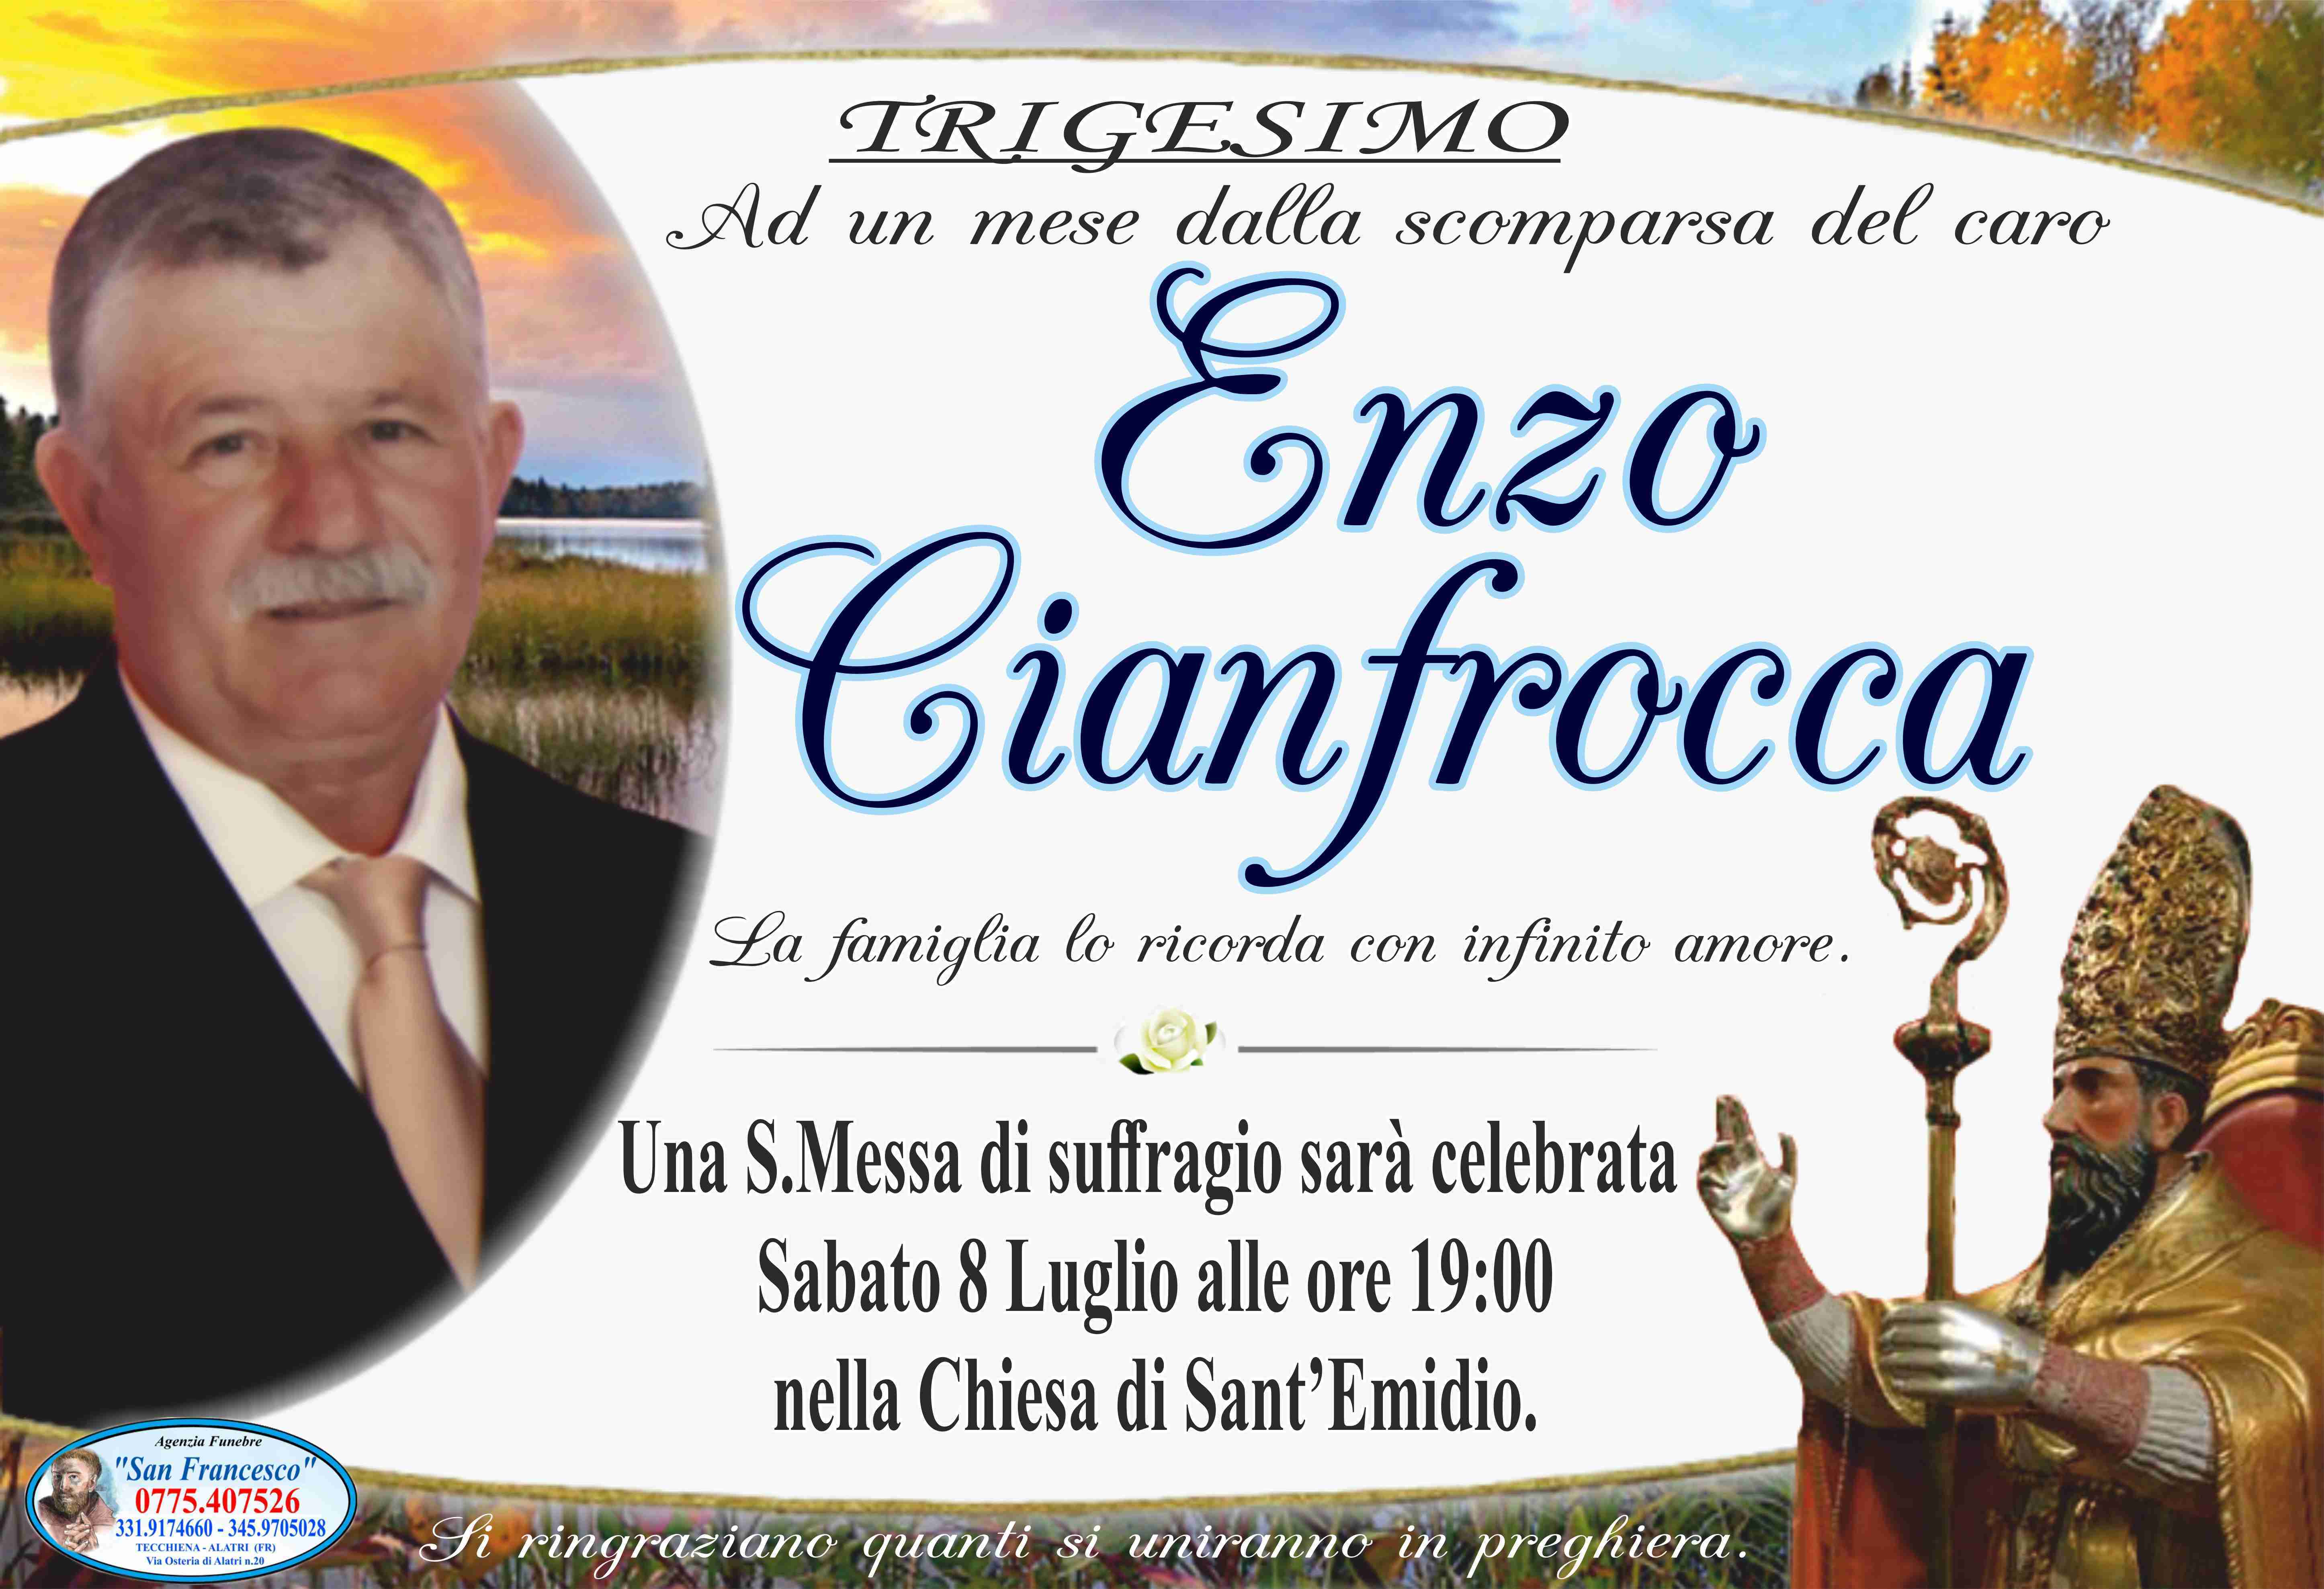 Enzo Cianfrocca